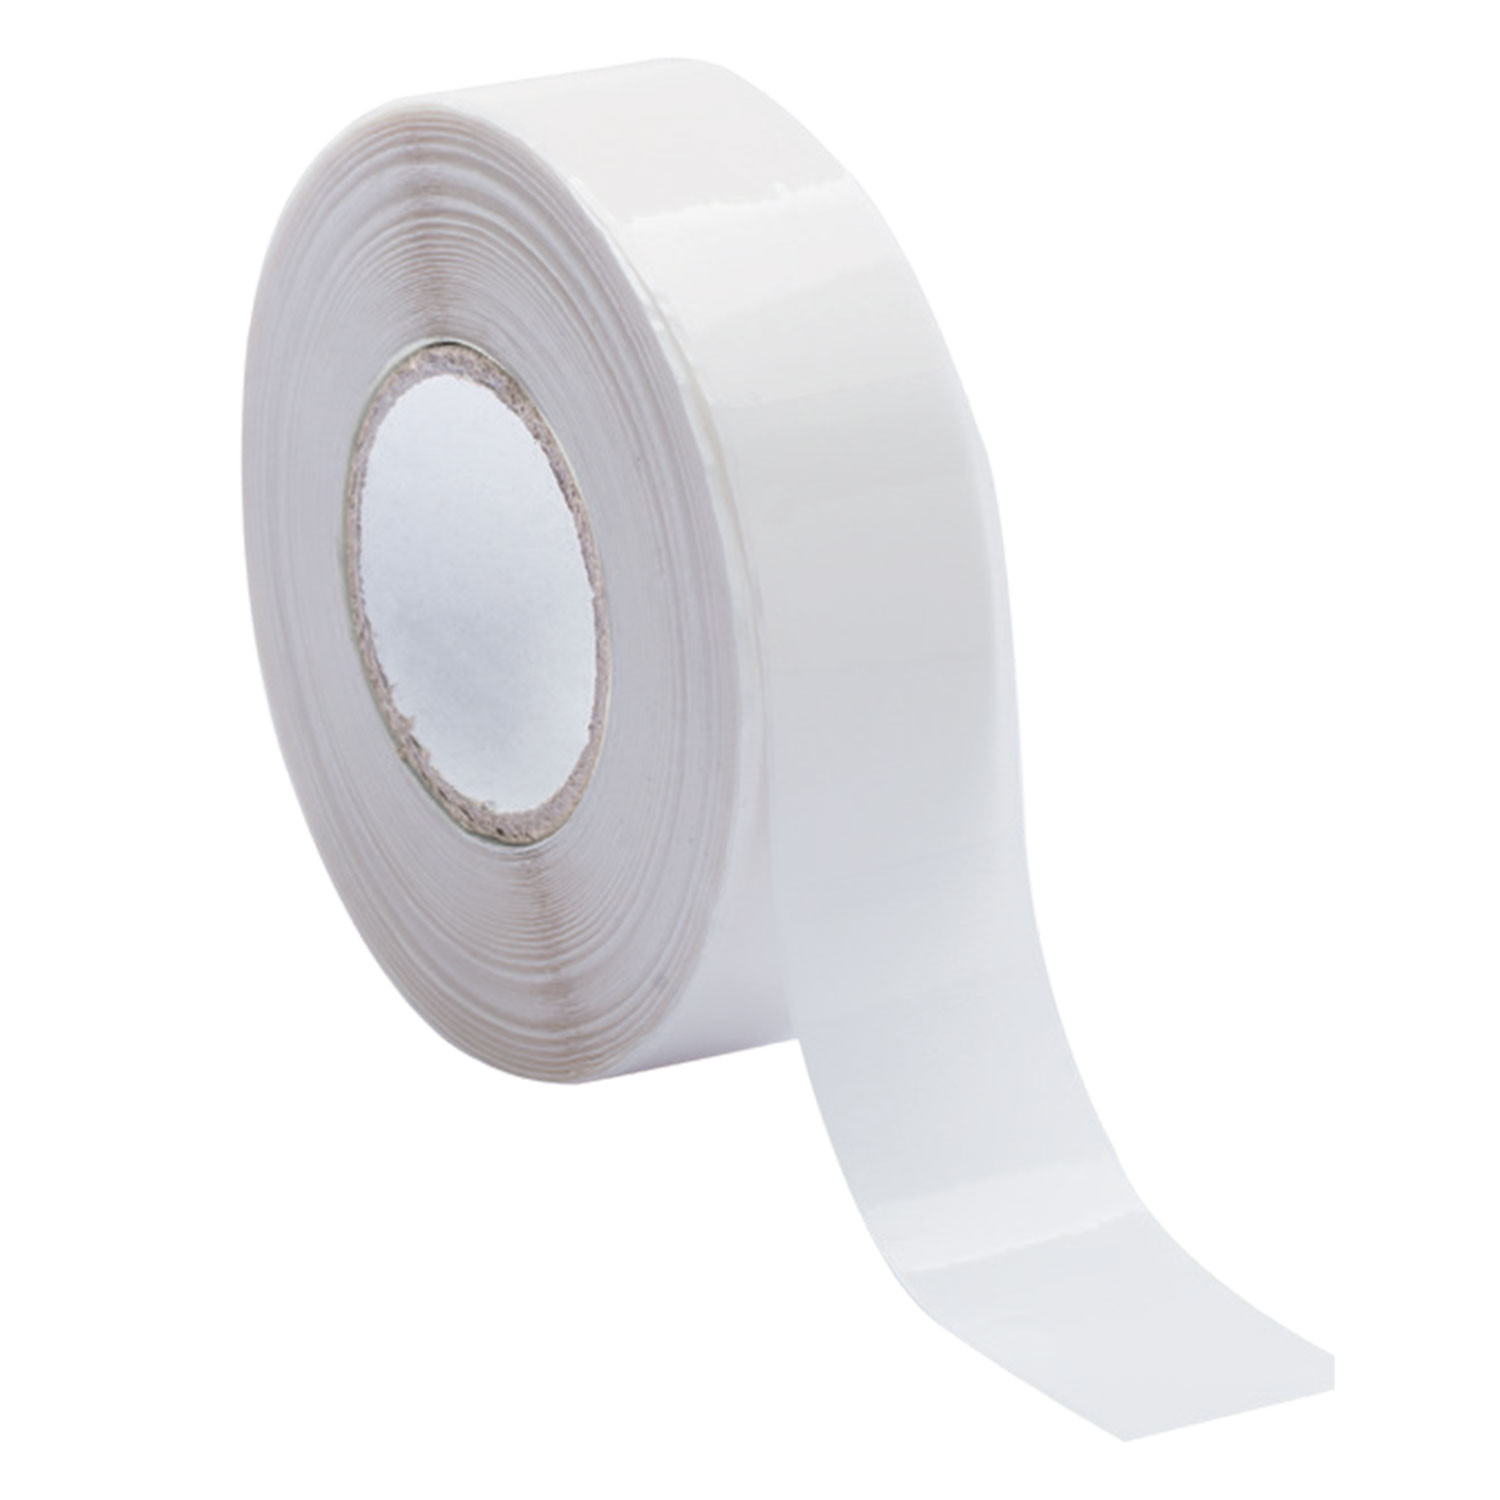 500 etichette autoadesive trasparenti/trasparente rotonda tenuta etichette/Misura 4 cm di diametro 40 millimetri rotolo di 500pcs.